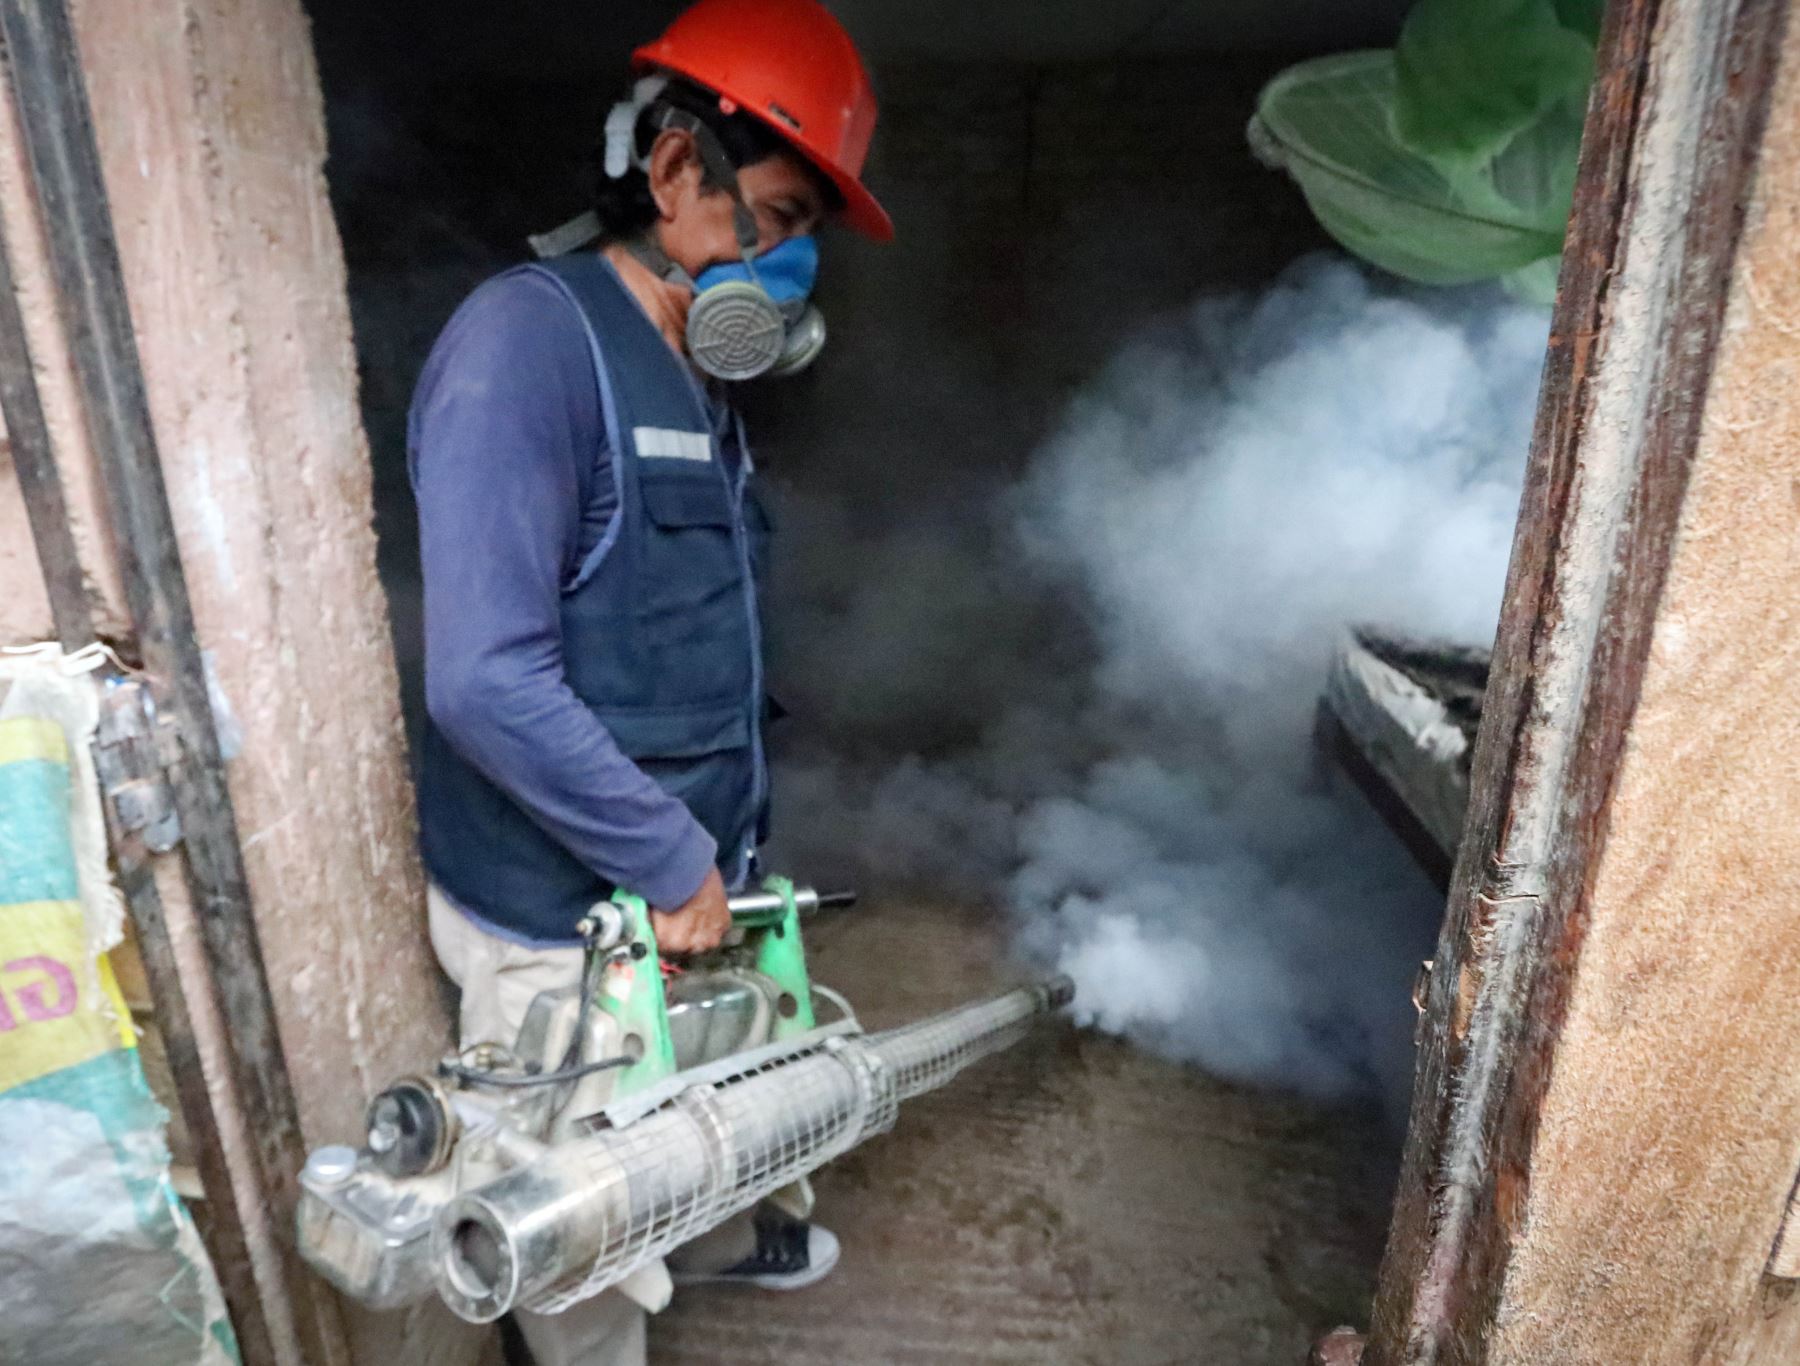 Red de Salud de Ica emprende acciones para combatir el brote de dengue en la provincia de Ica ante el incremento de casos de esta enfermedad. Foto: Genry Bautista.